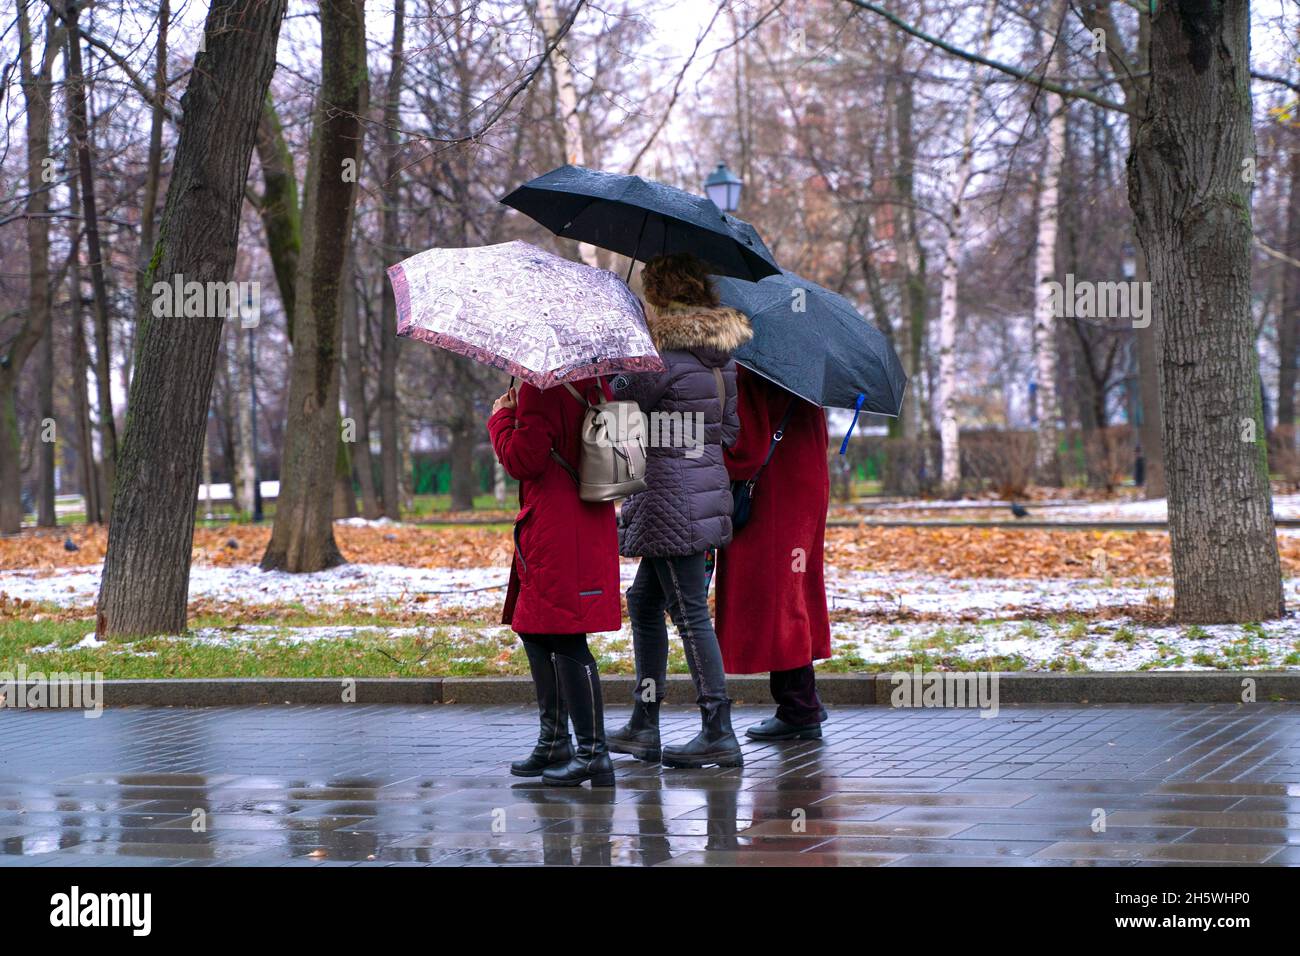 Mosca, Russia - 11 novembre 2021: Pioggia in città, donna con ombrello a piedi su una strada su folla di gente sfondo. Tempo piovoso, tempesta autunnale. Foto di alta qualità Foto Stock